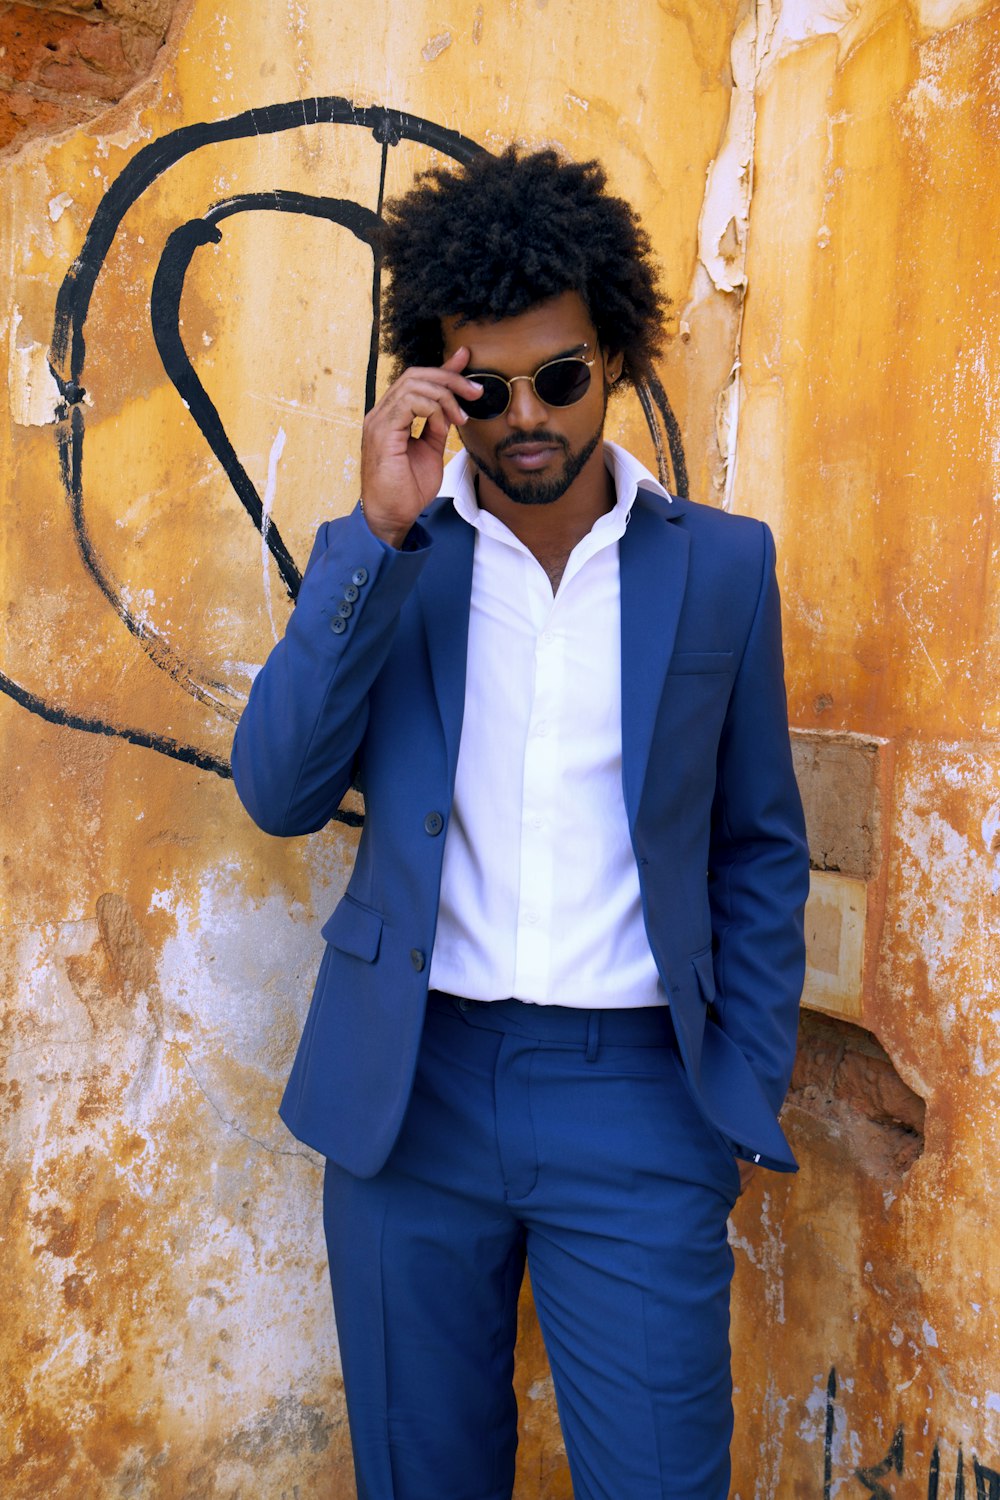 Mann in blauer Anzugjacke und schwarzer Sonnenbrille neben brauner Betonwand